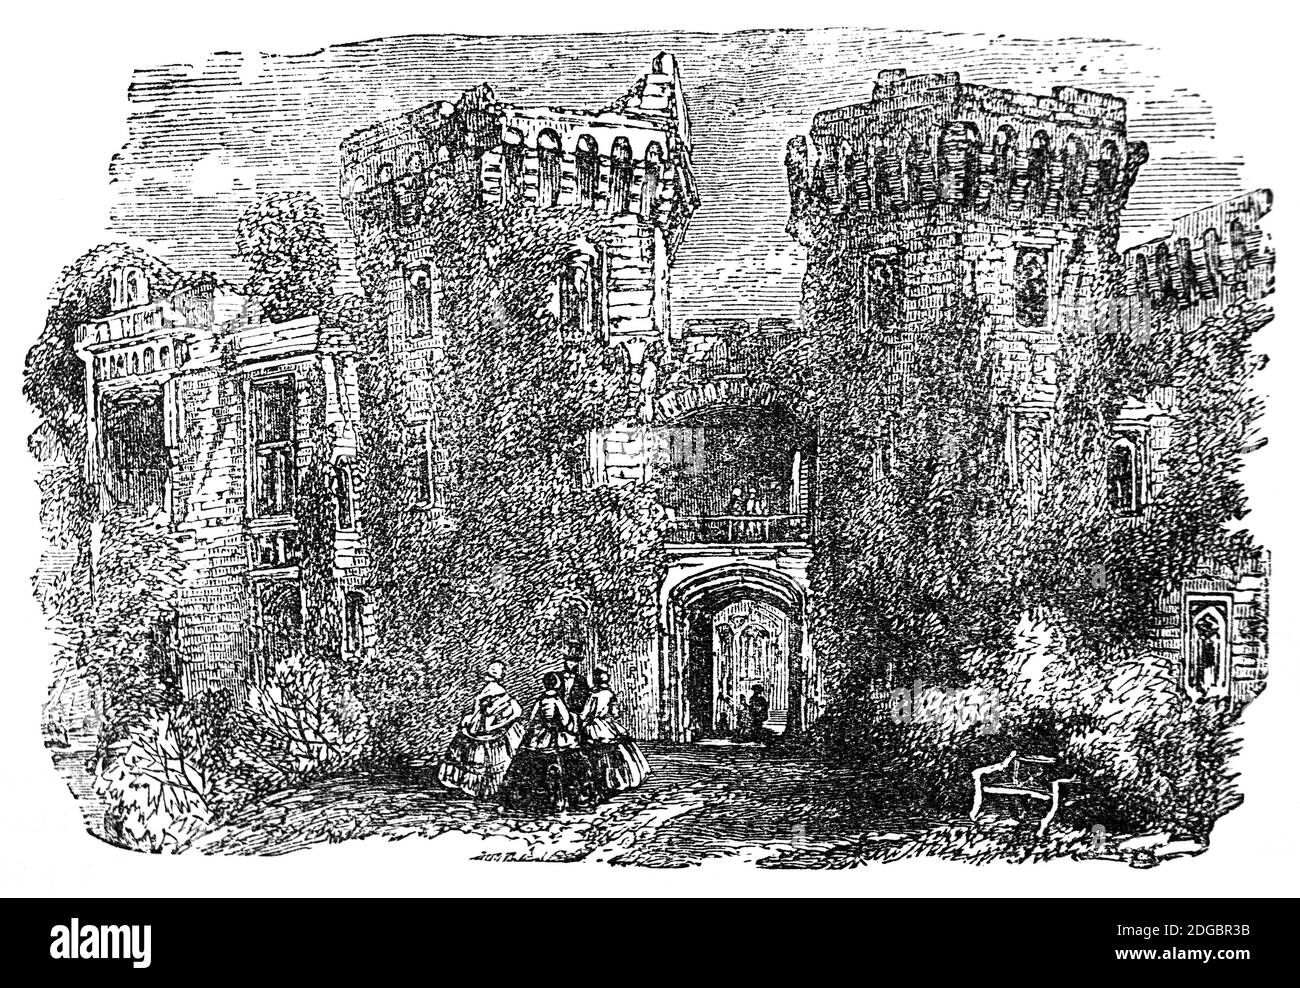 Una vista del 19 ° secolo della principale gatehouse di Raglan Castello, un castello tardo medievale a nord del villaggio di Raglan nel Monmouthshire, Galles del sud. Il castello moderno risale al XVI secolo circa, quando le successive famiglie regnanti degli Herberts e dei Somersets crearono un lussuoso castello fortificato. Durante la guerra civile inglese il castello fu tenuto per conto di Carlo i, ma preso dalle forze parlamentari nel 1646. In seguito, il castello fu smantellato; dopo il restauro di Carlo II, i Somersets rifiutarono di ripristinare il castello e divenne una rovina romantica. Foto Stock